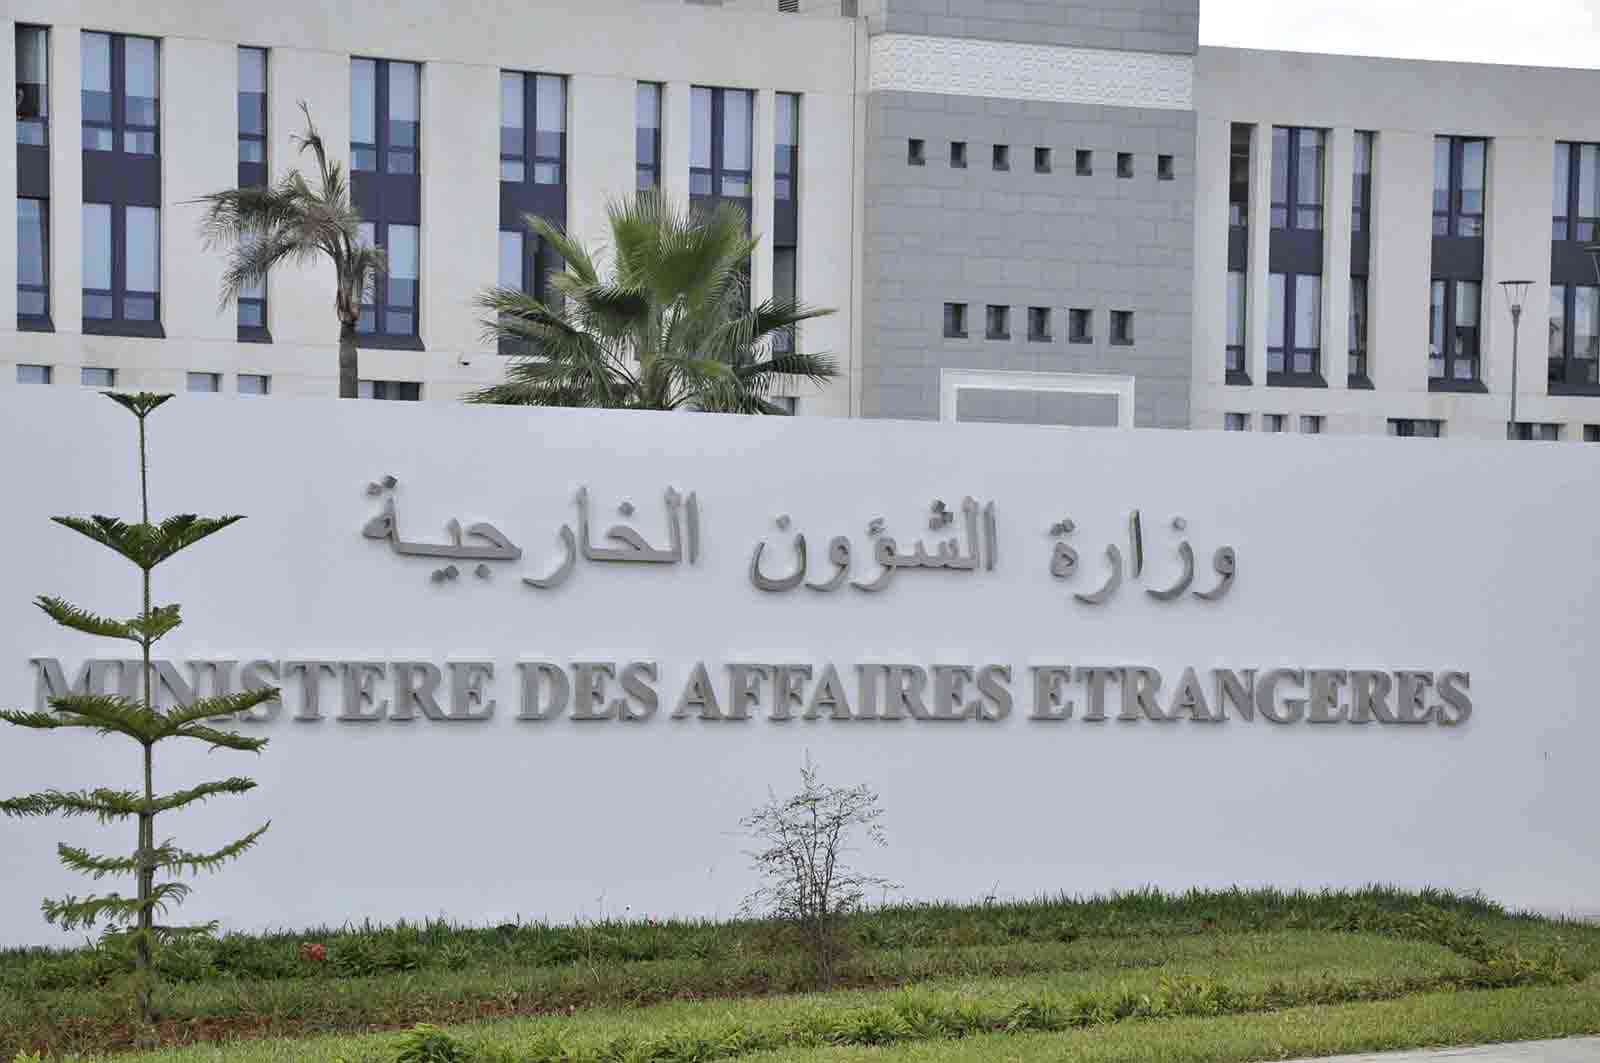 الخارجية الجزائرية تطمئن حول أفراد الجالية بالسودان